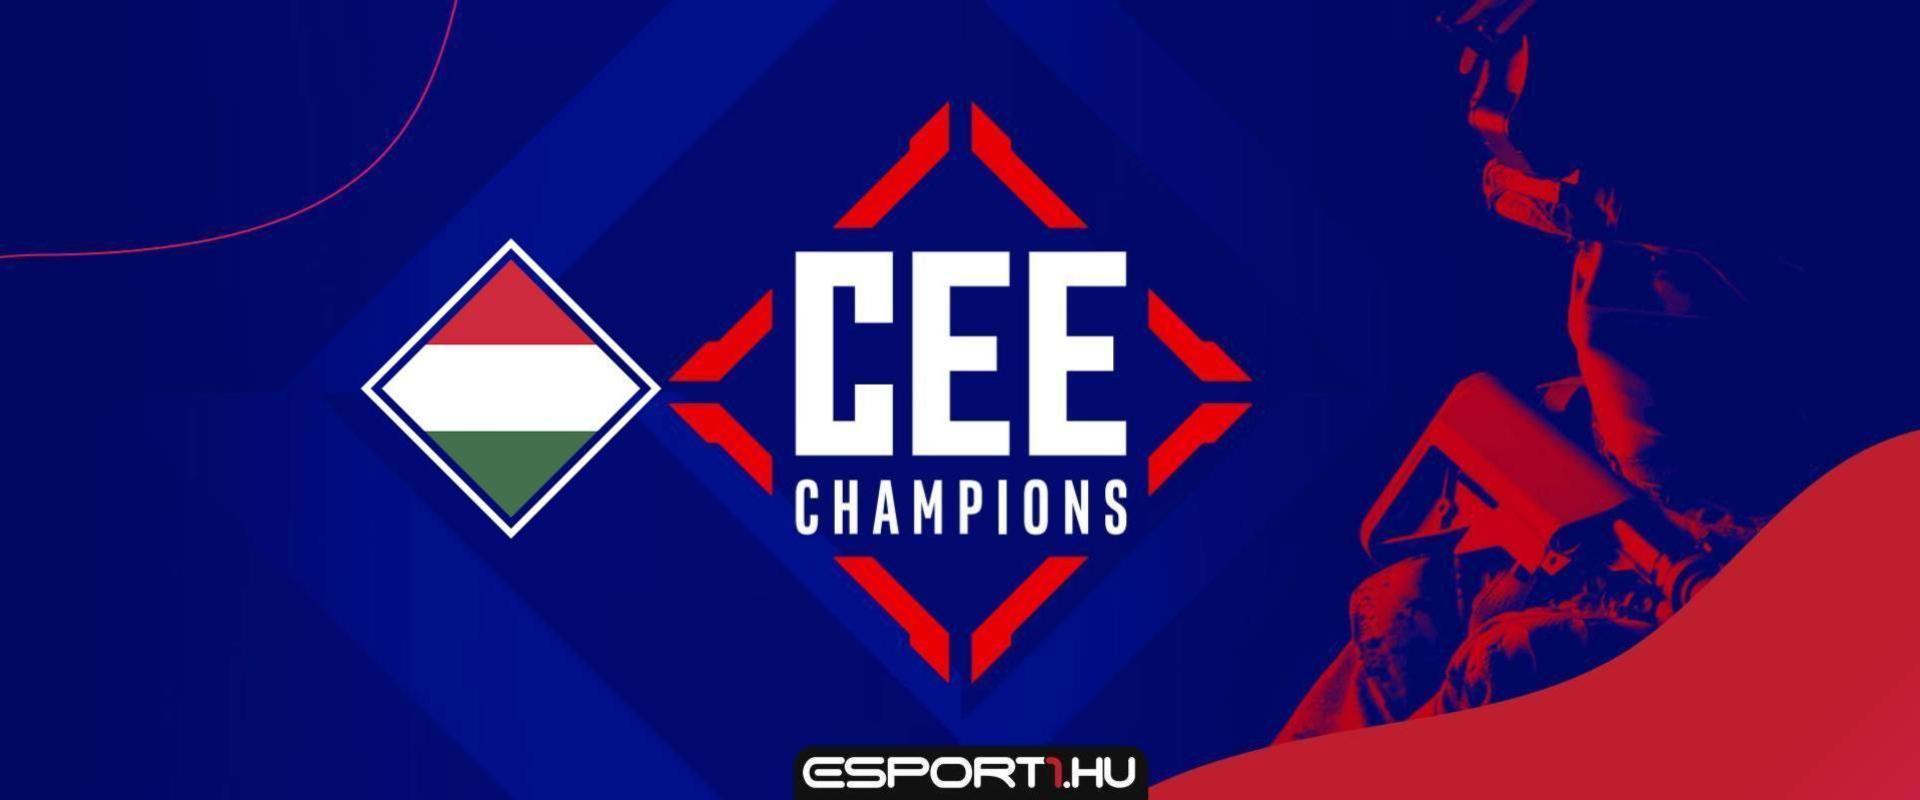 Négyen már bejutottak a CEE Champions zárt kvalijába, még neked is van esélyed